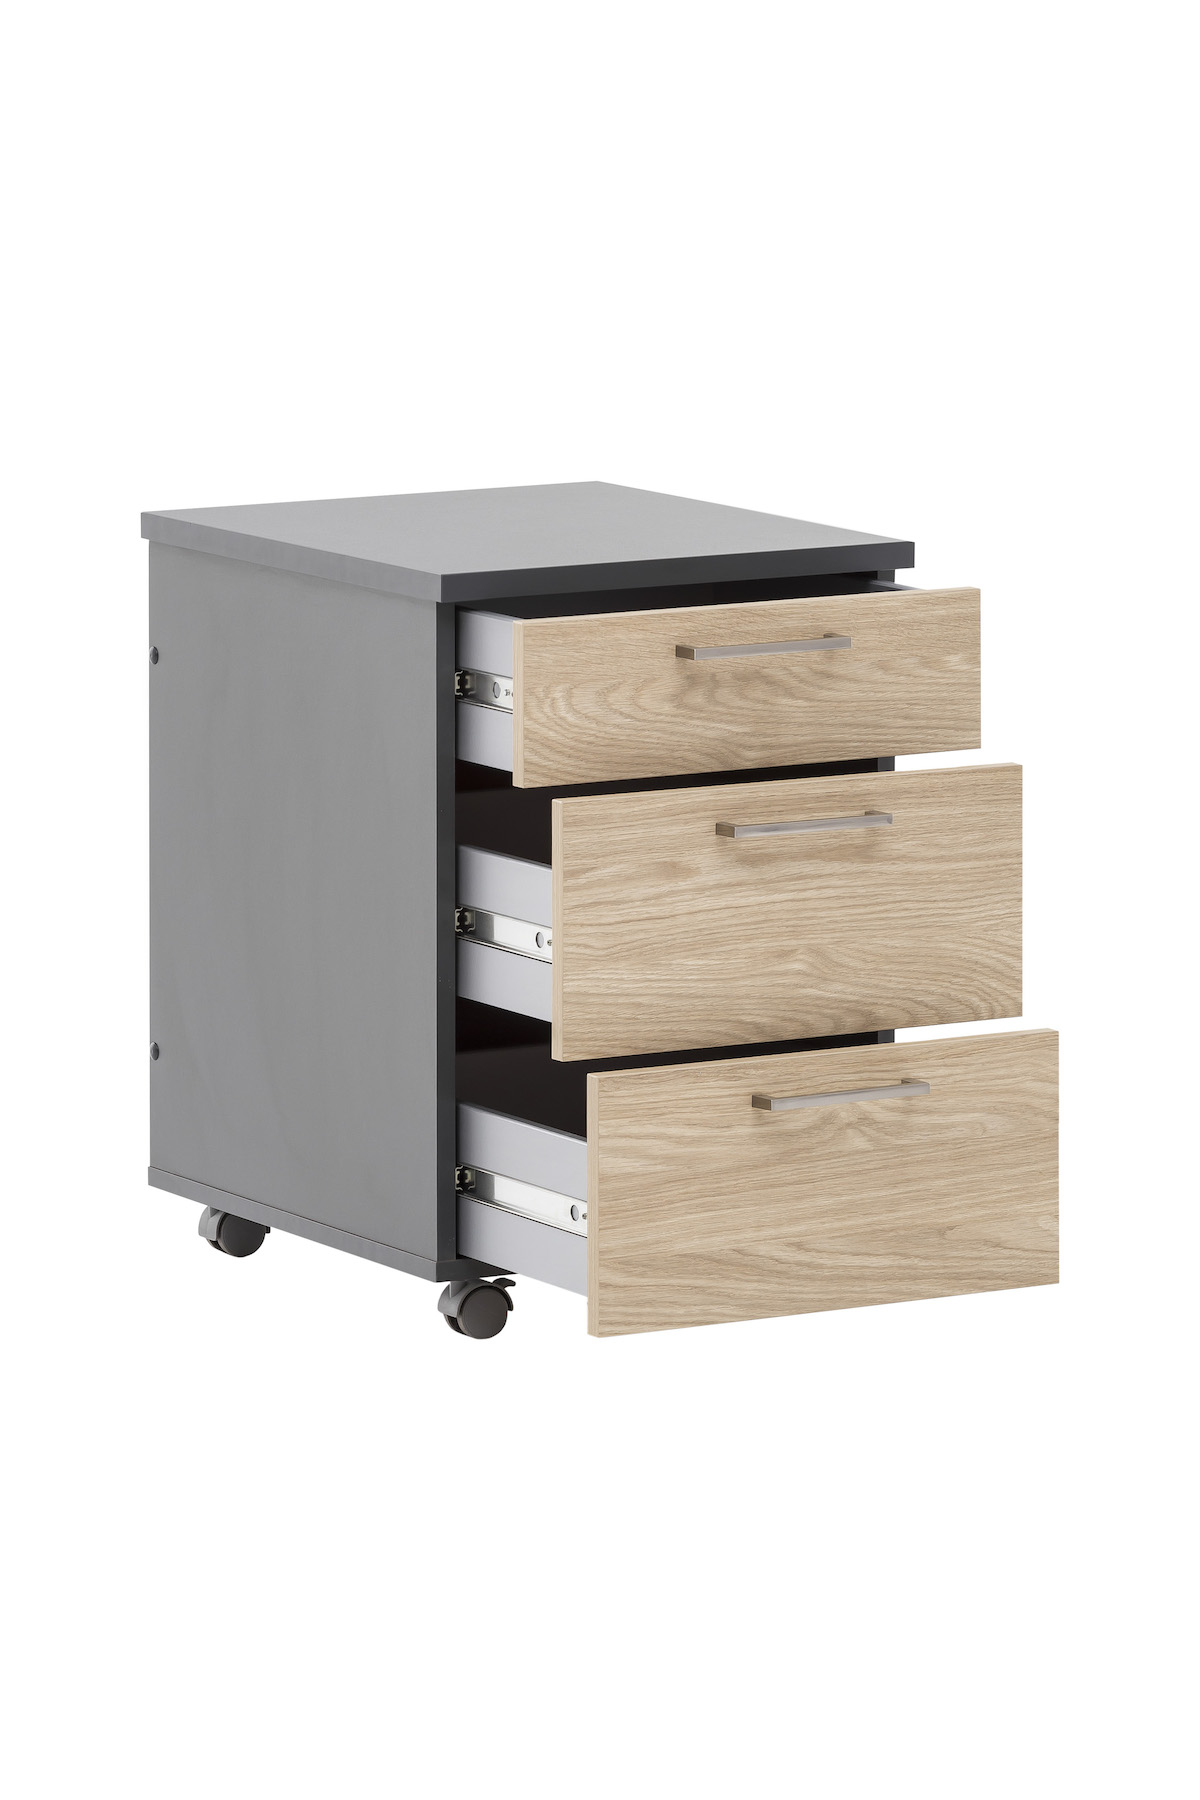 Möbelpartner Rollcontainer Hippo | HxBxT 60x40x50cm (Höhe mit Rollen) | 3 Schubladen | Eiche